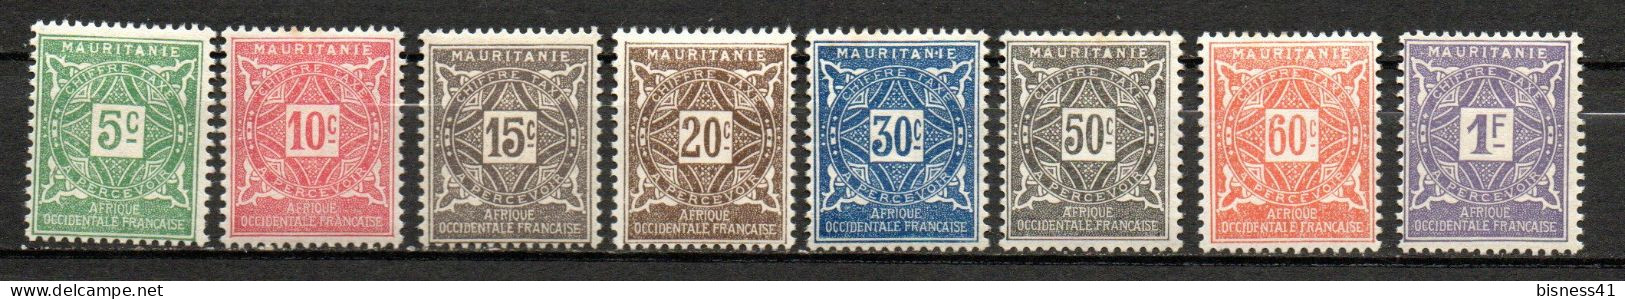 Col33  Colonie Mauritanie Taxe N° 17 à 24 Neuf X MH  Cote : 9,25€ - Gebruikt